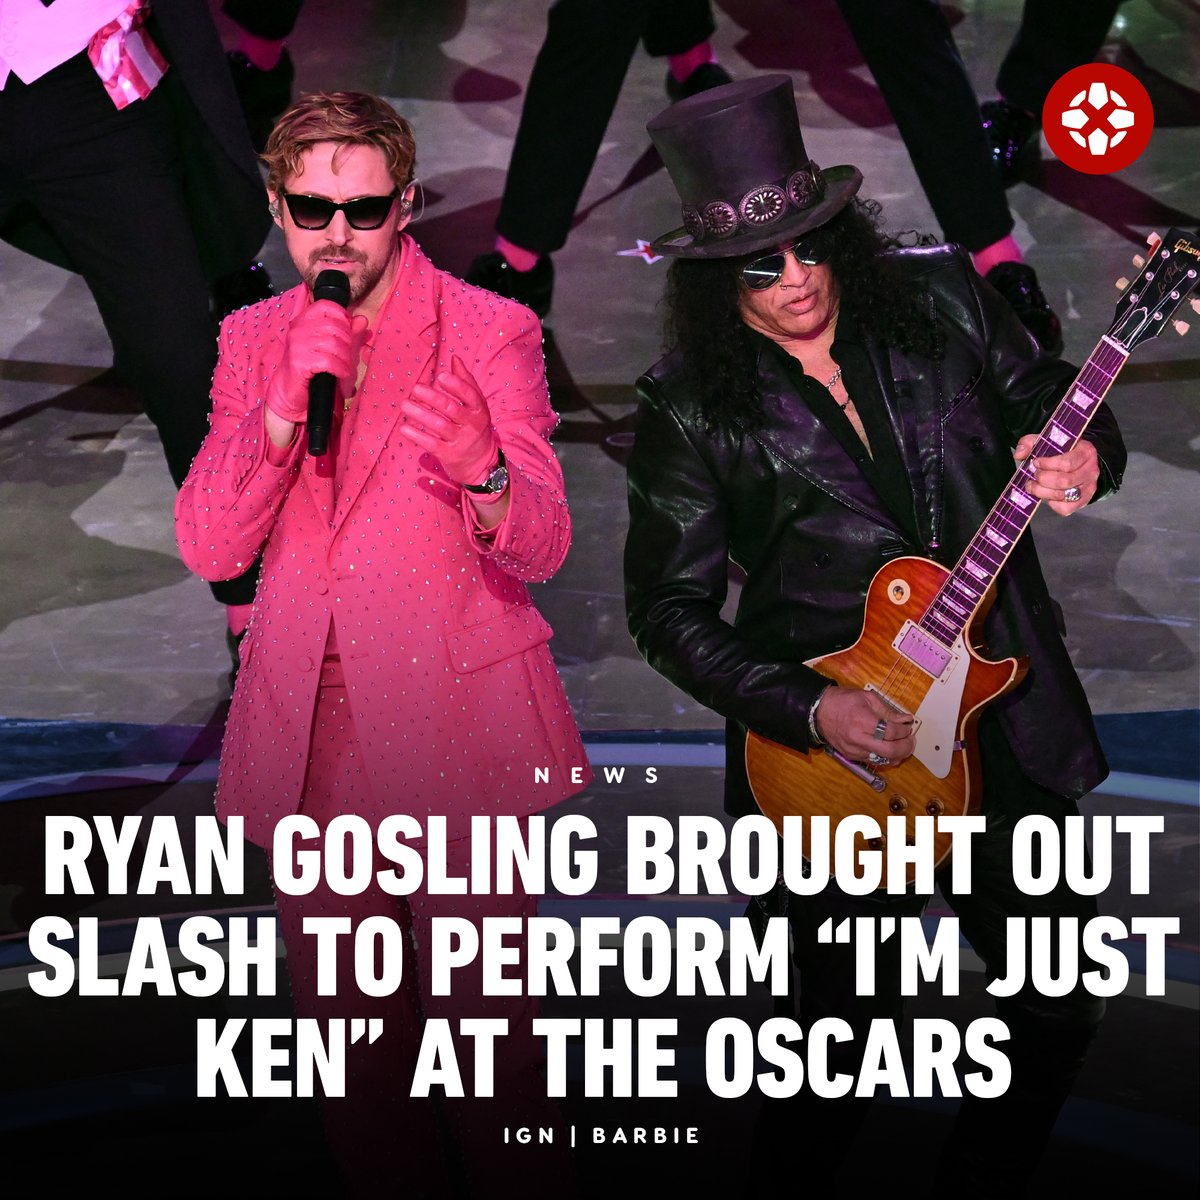 This officially makes Slash a Ken. #Oscars